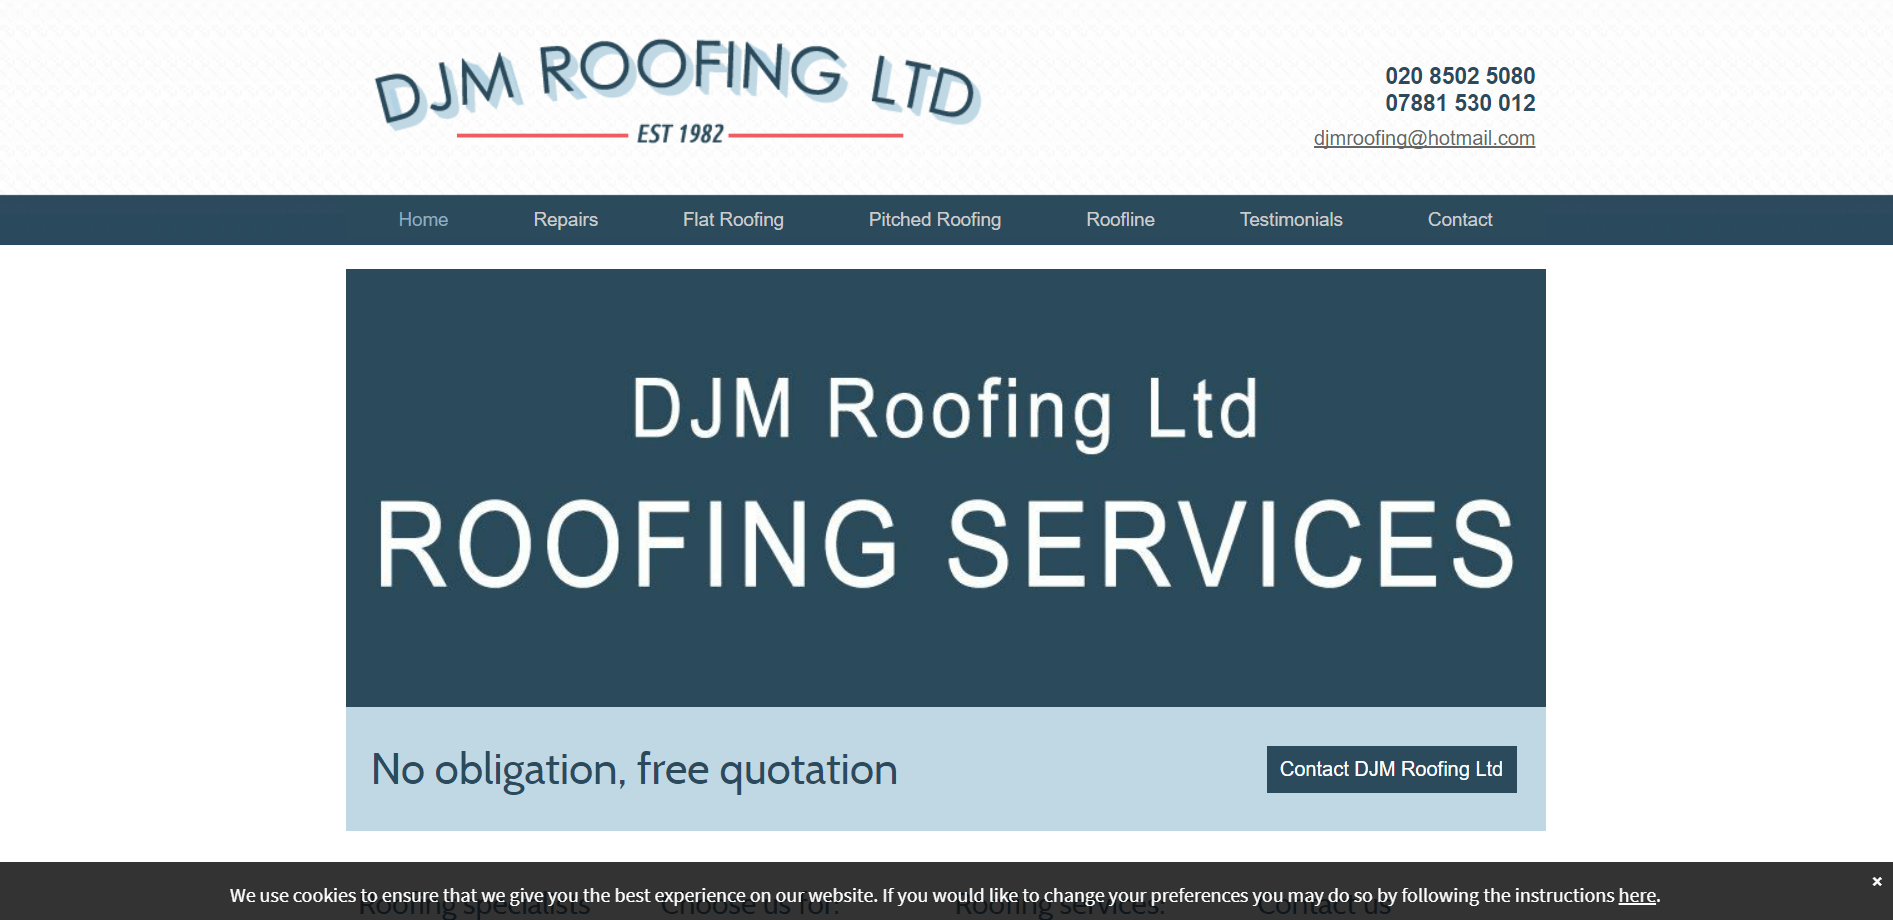 DJM Roofing